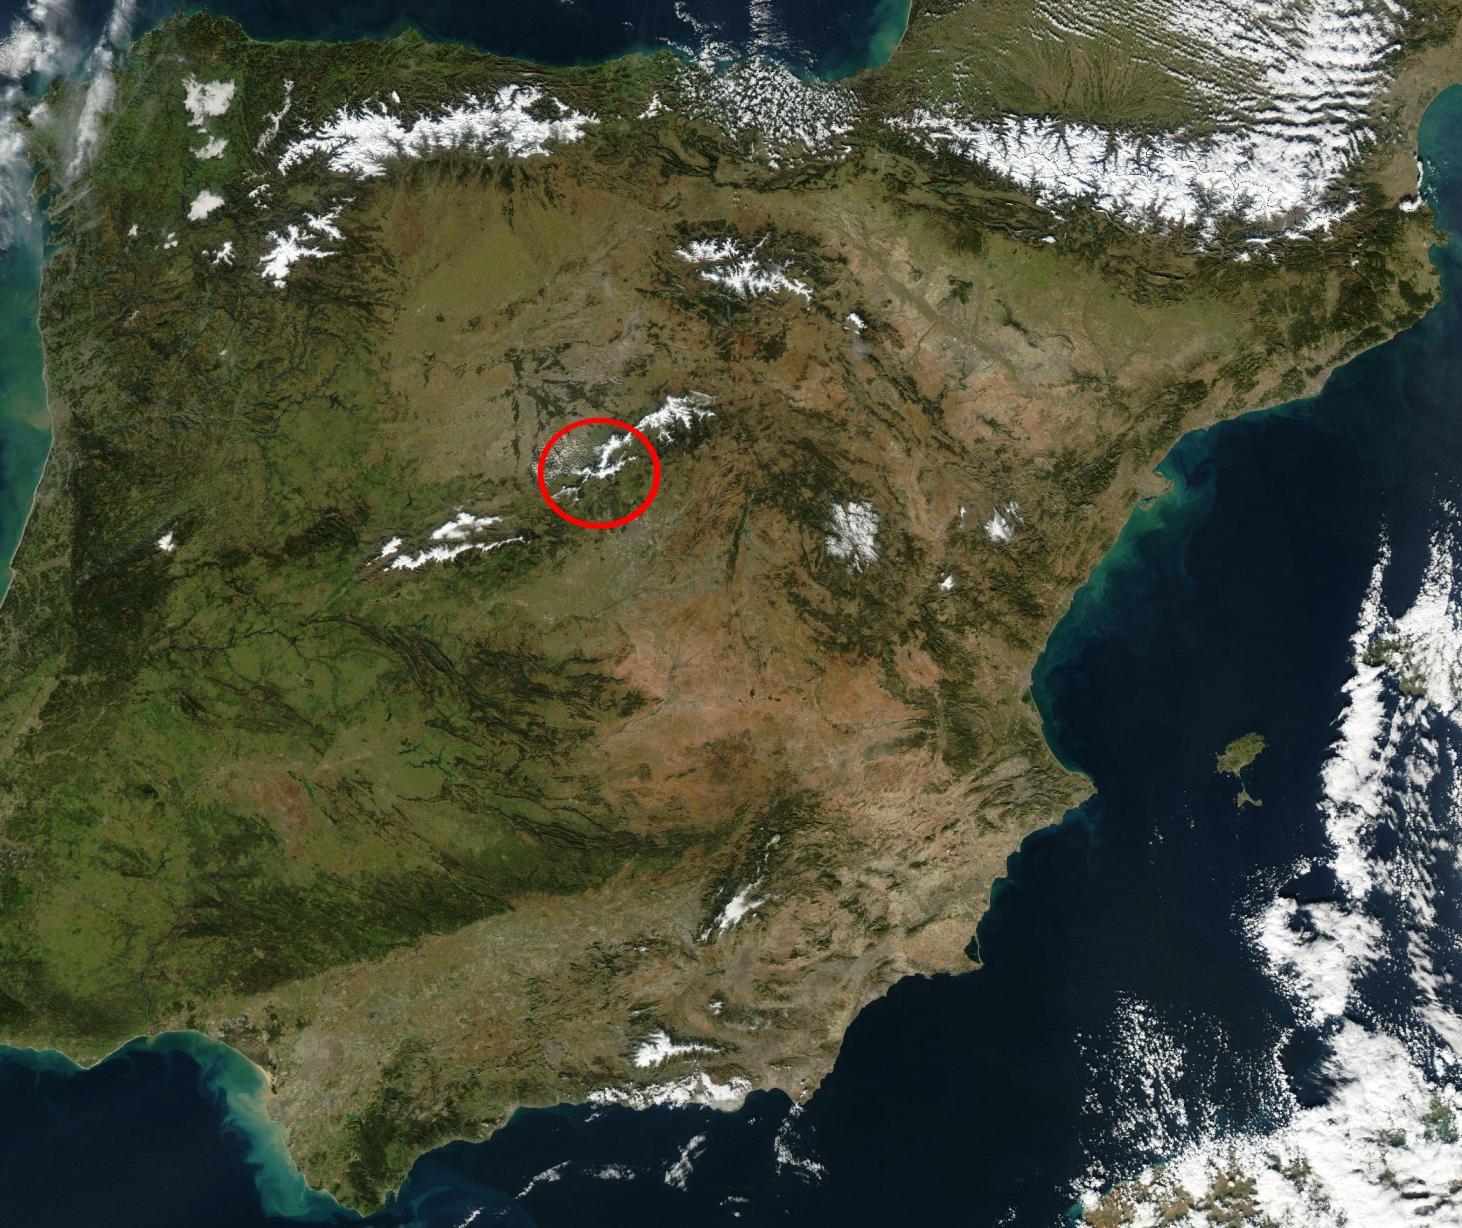 [Sierra_de_guadarrama-satelite1.jpg]